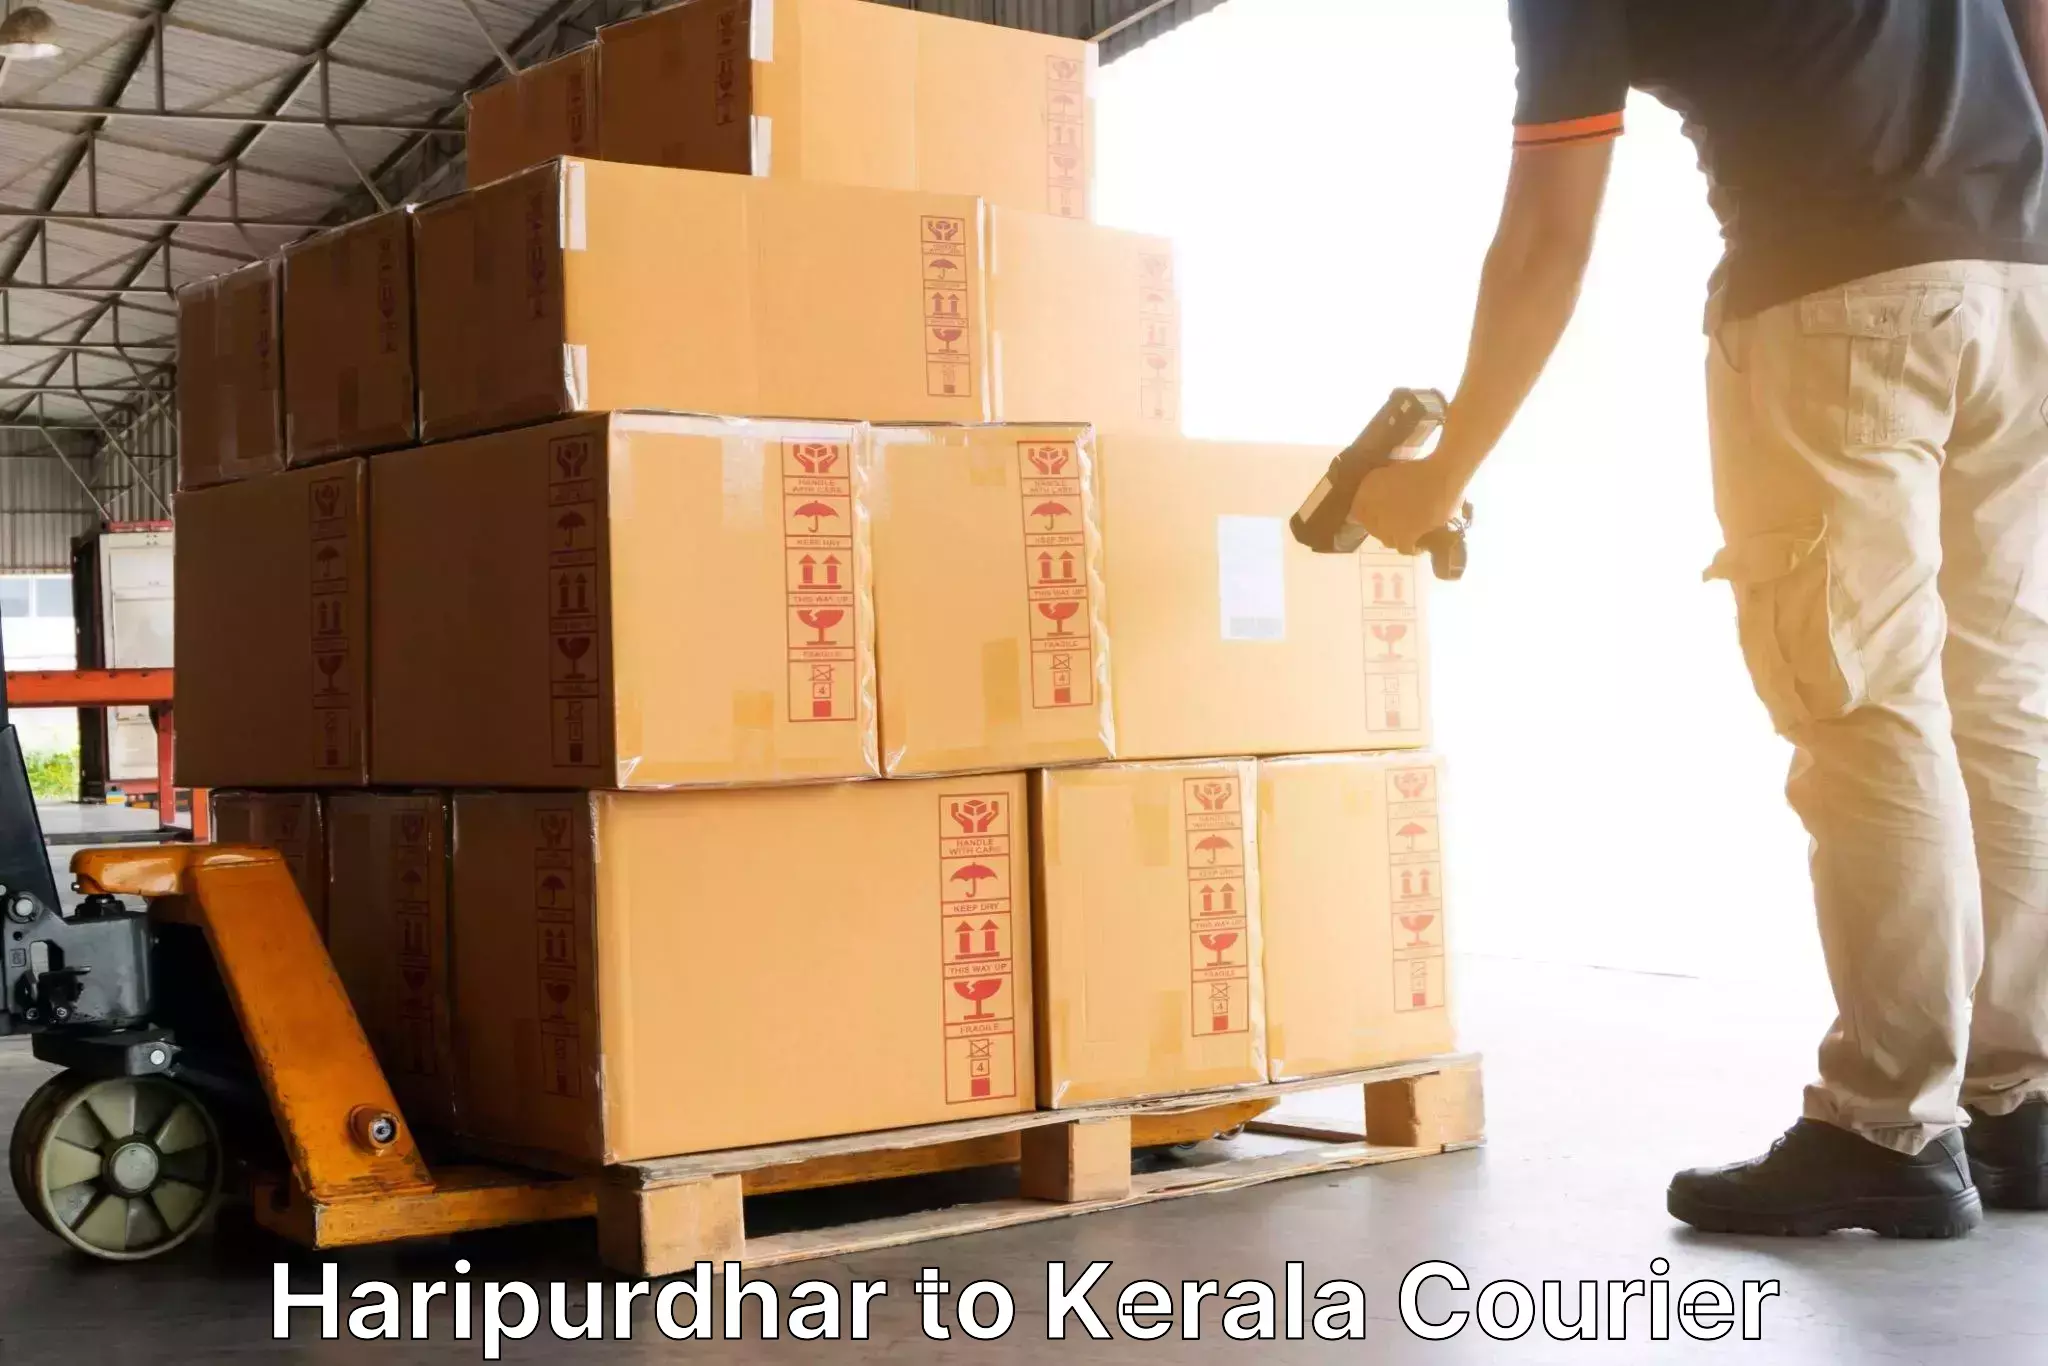 Premium courier services Haripurdhar to Wayanad